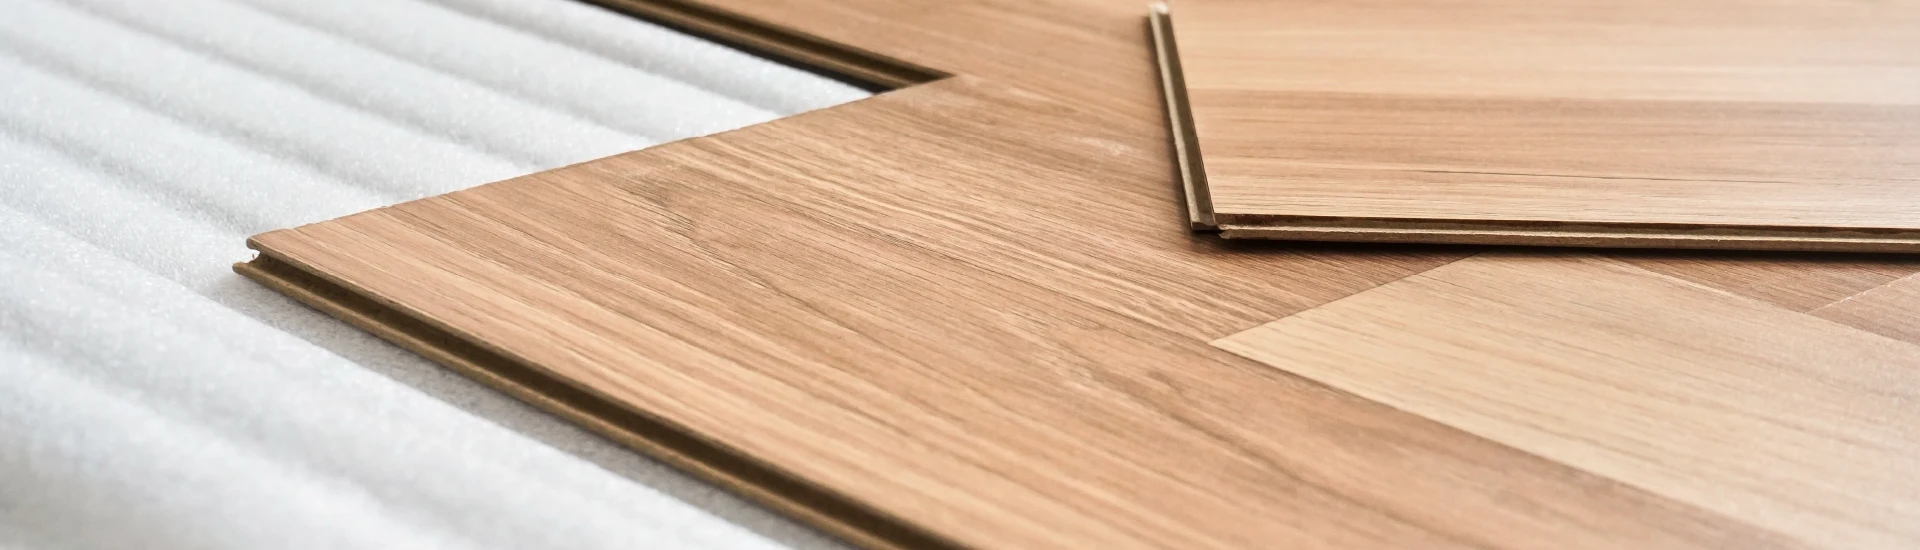 listelli di legno per pavimenti di Biella Legno che vengono assemblati